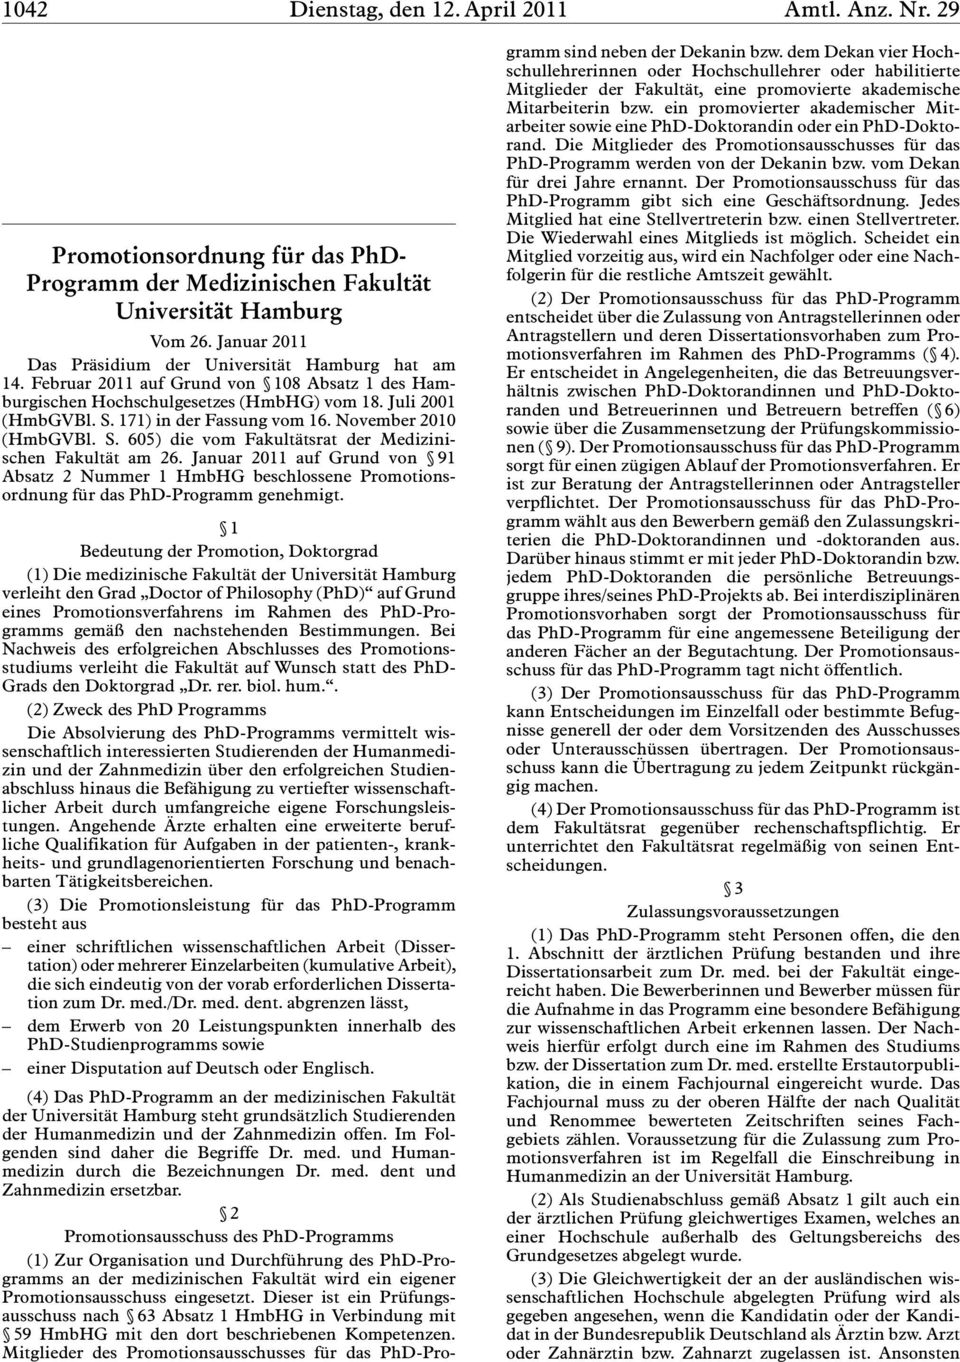 Januar 2011 auf Grund von 91 Absatz 2 Nummer 1 HmbHG beschlossene Promotionsordnung für das PhD-Programm genehmigt.